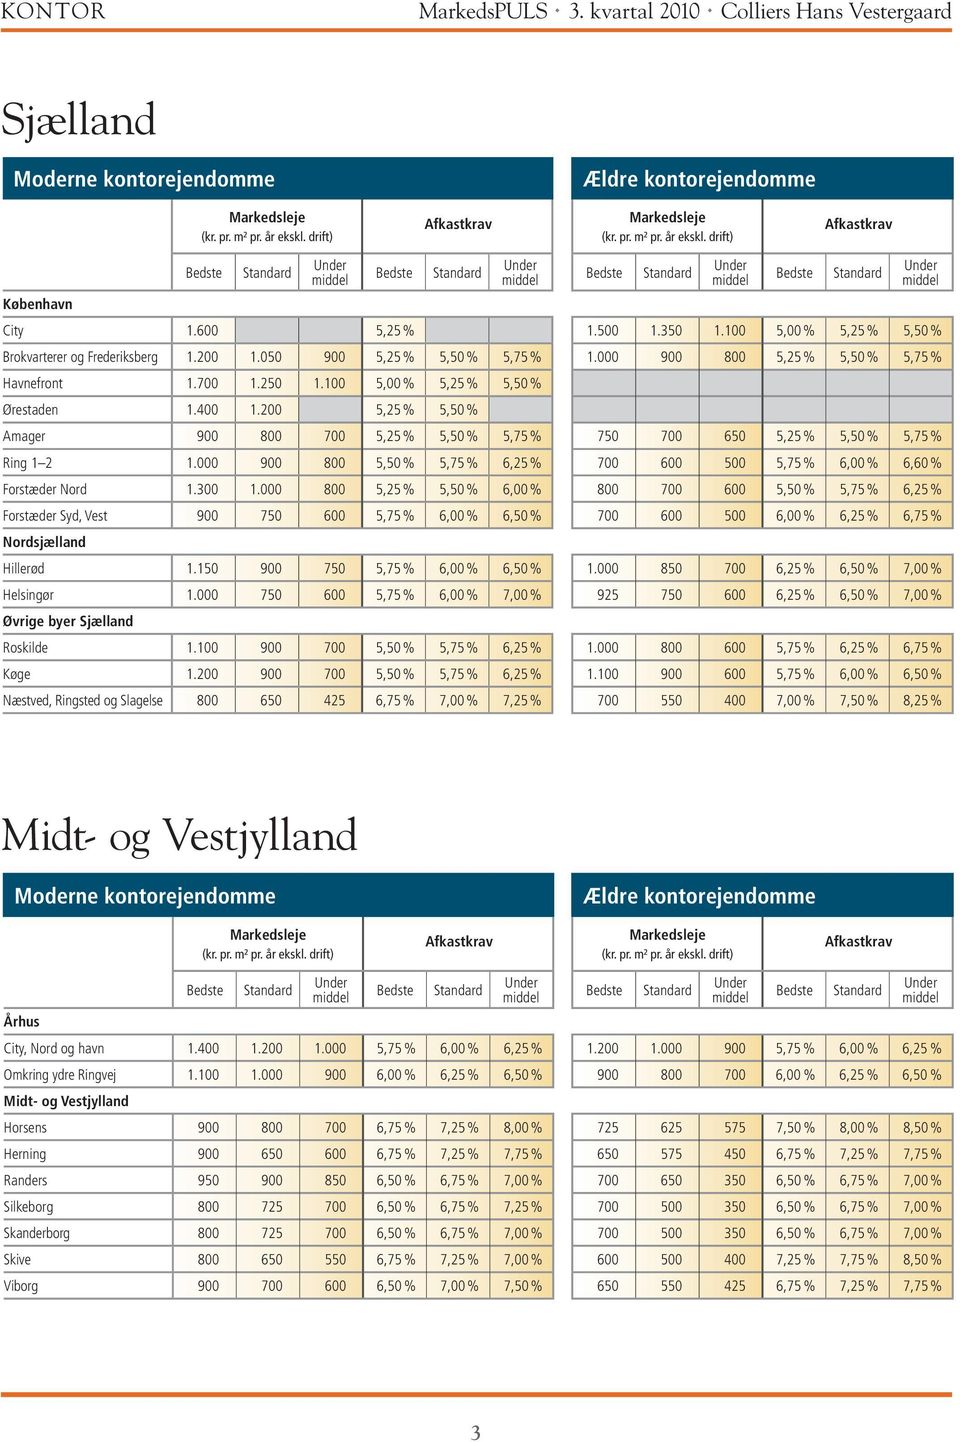 000 800 5,25 % 5,50 % 6,00 % Forstæder Syd, Vest 900 750 600 5,75 % 6,00 % 6,50 % Nordsjælland Hillerød 1.150 900 750 5,75 % 6,00 % 6,50 % Helsingør 1.